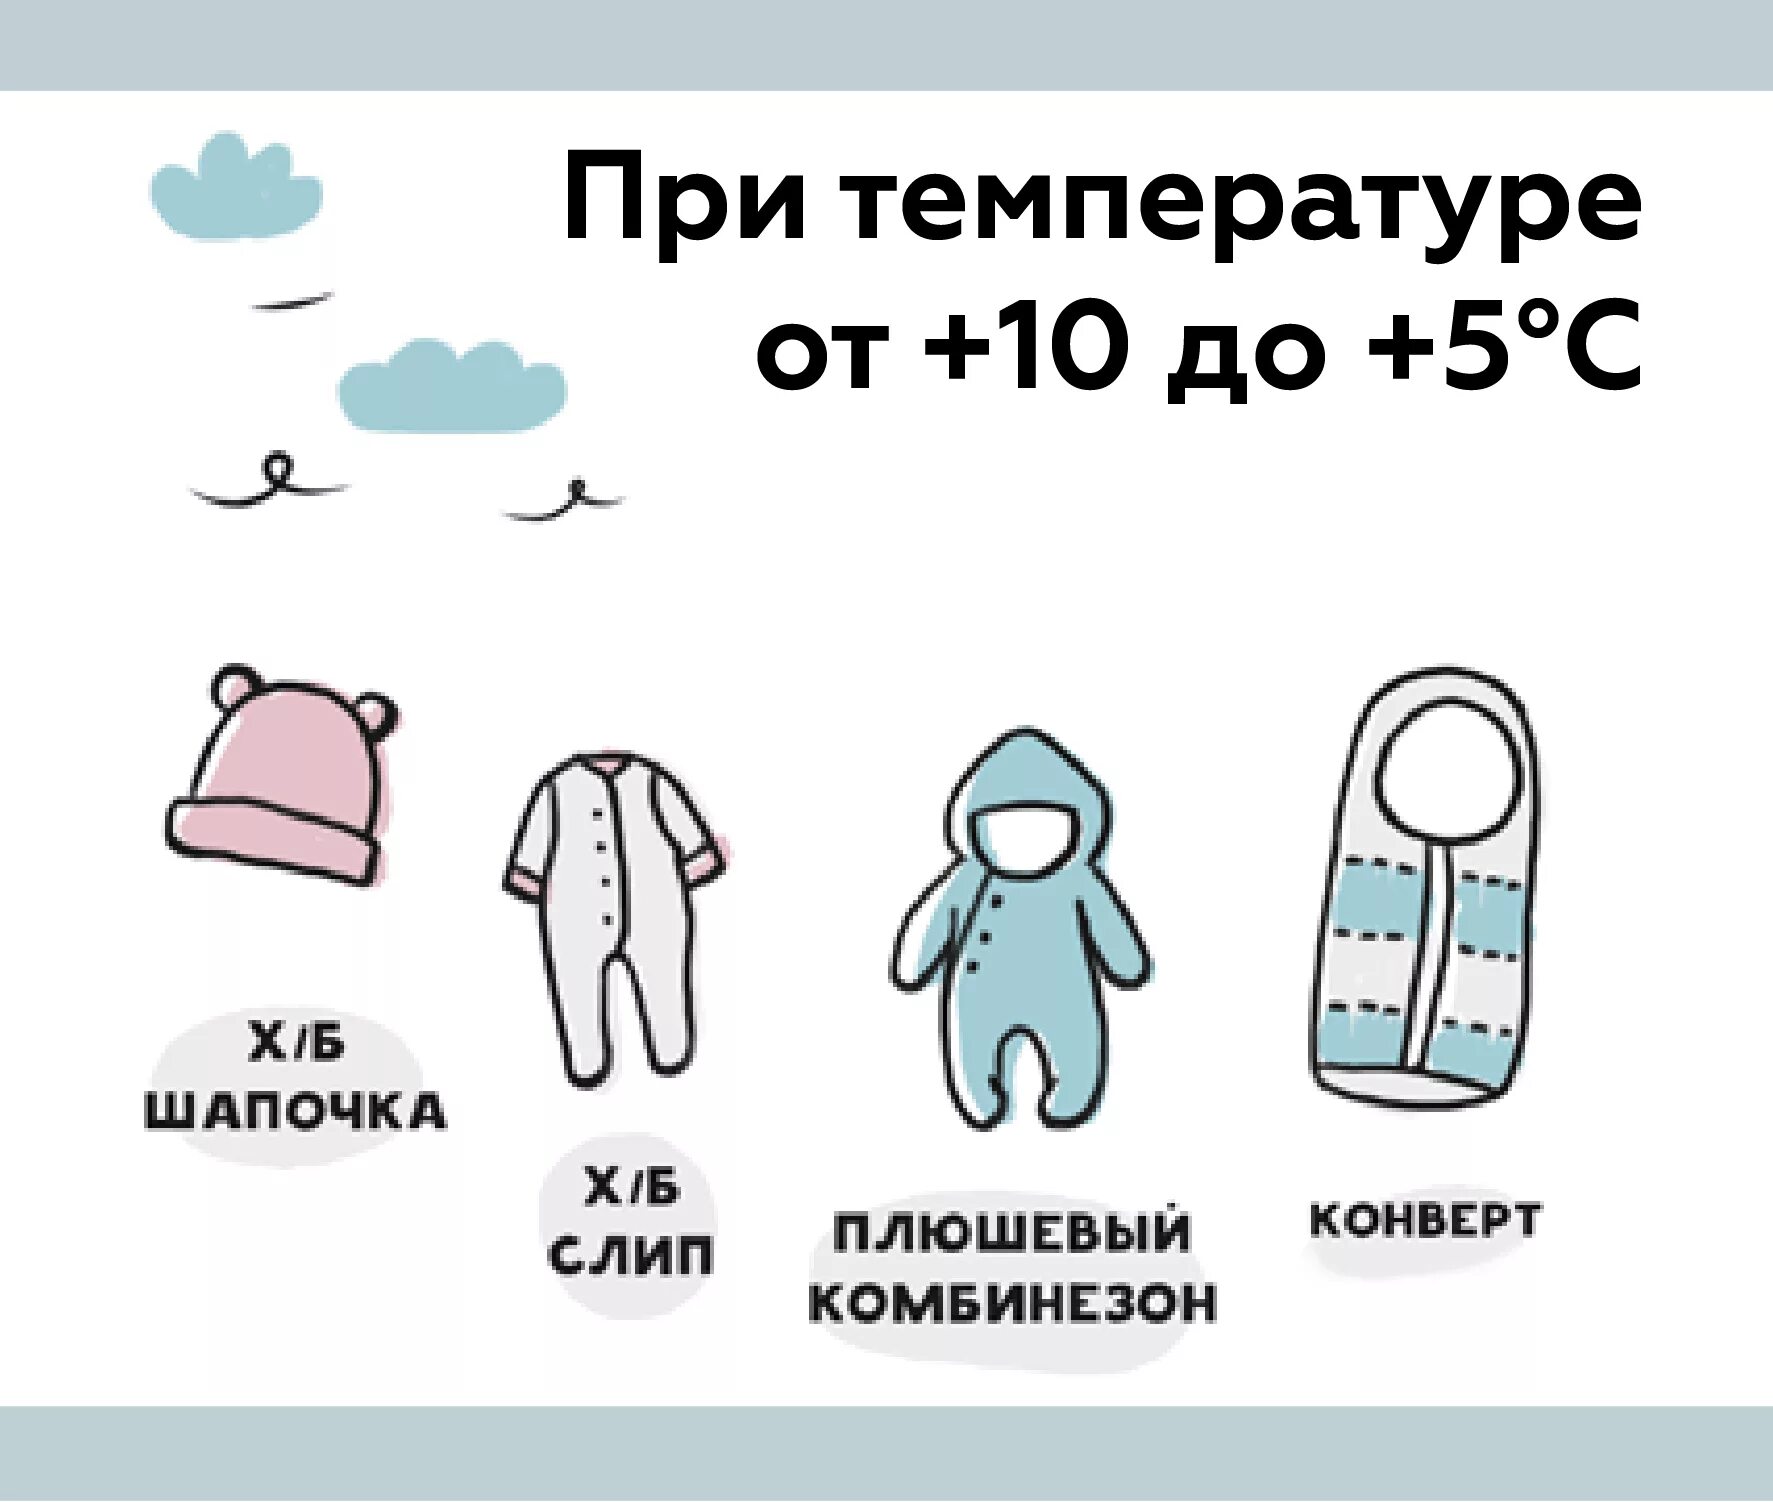 Как одеть ребенка в 14. Как одеть грудничка на прогулку в +10. Как одевать грудничка на улицу в +10. Как одевать малыша в 10 градусов тепла. Как одевать грудничка в +25 на прогулку.